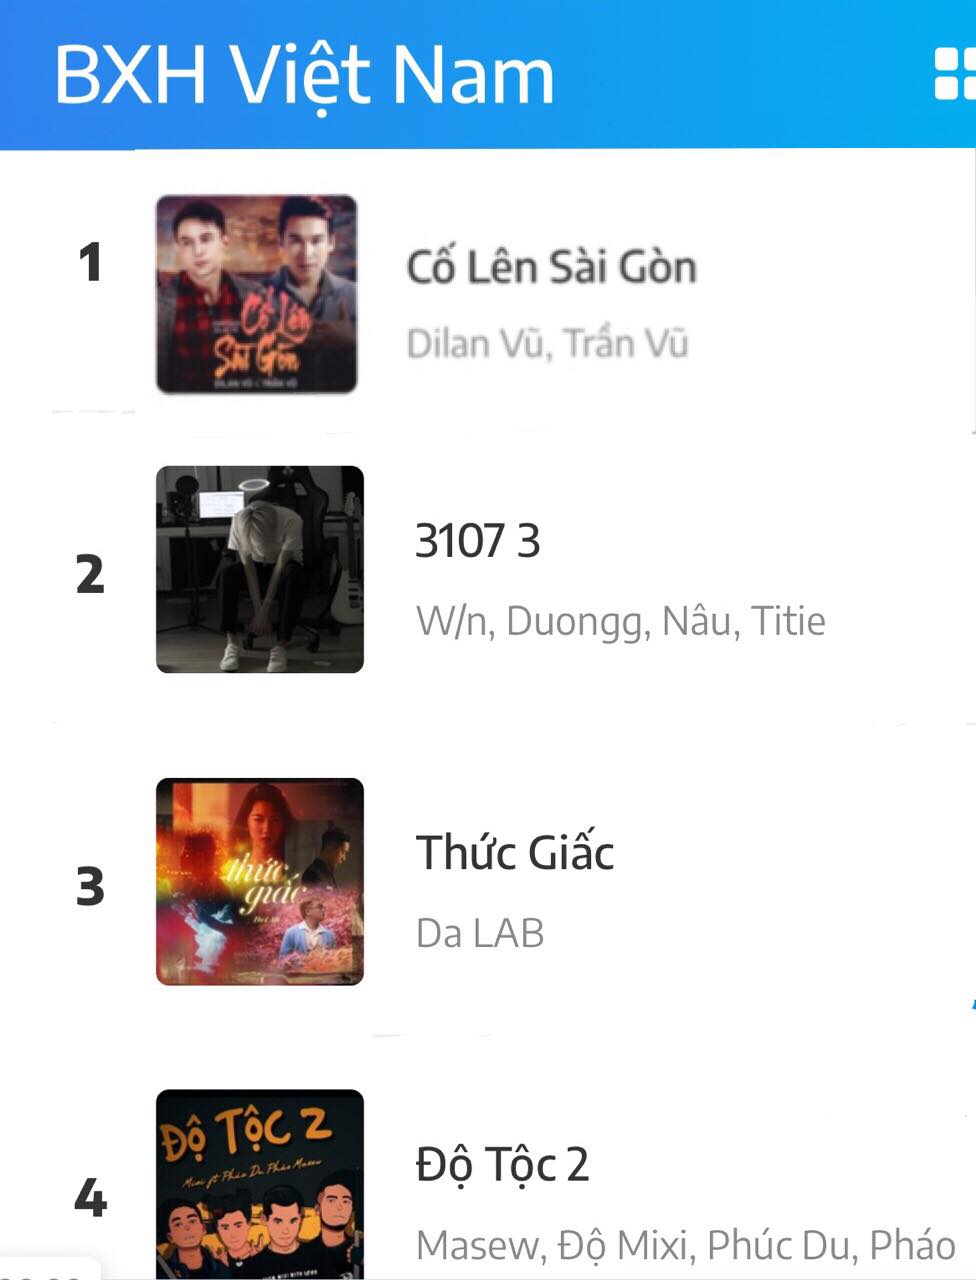 Sau 3 ngày phát hành, ca khúc 'Cố lên Sài Gòn' lọt top thịnh hành BXH âm nhạc - ảnh 1